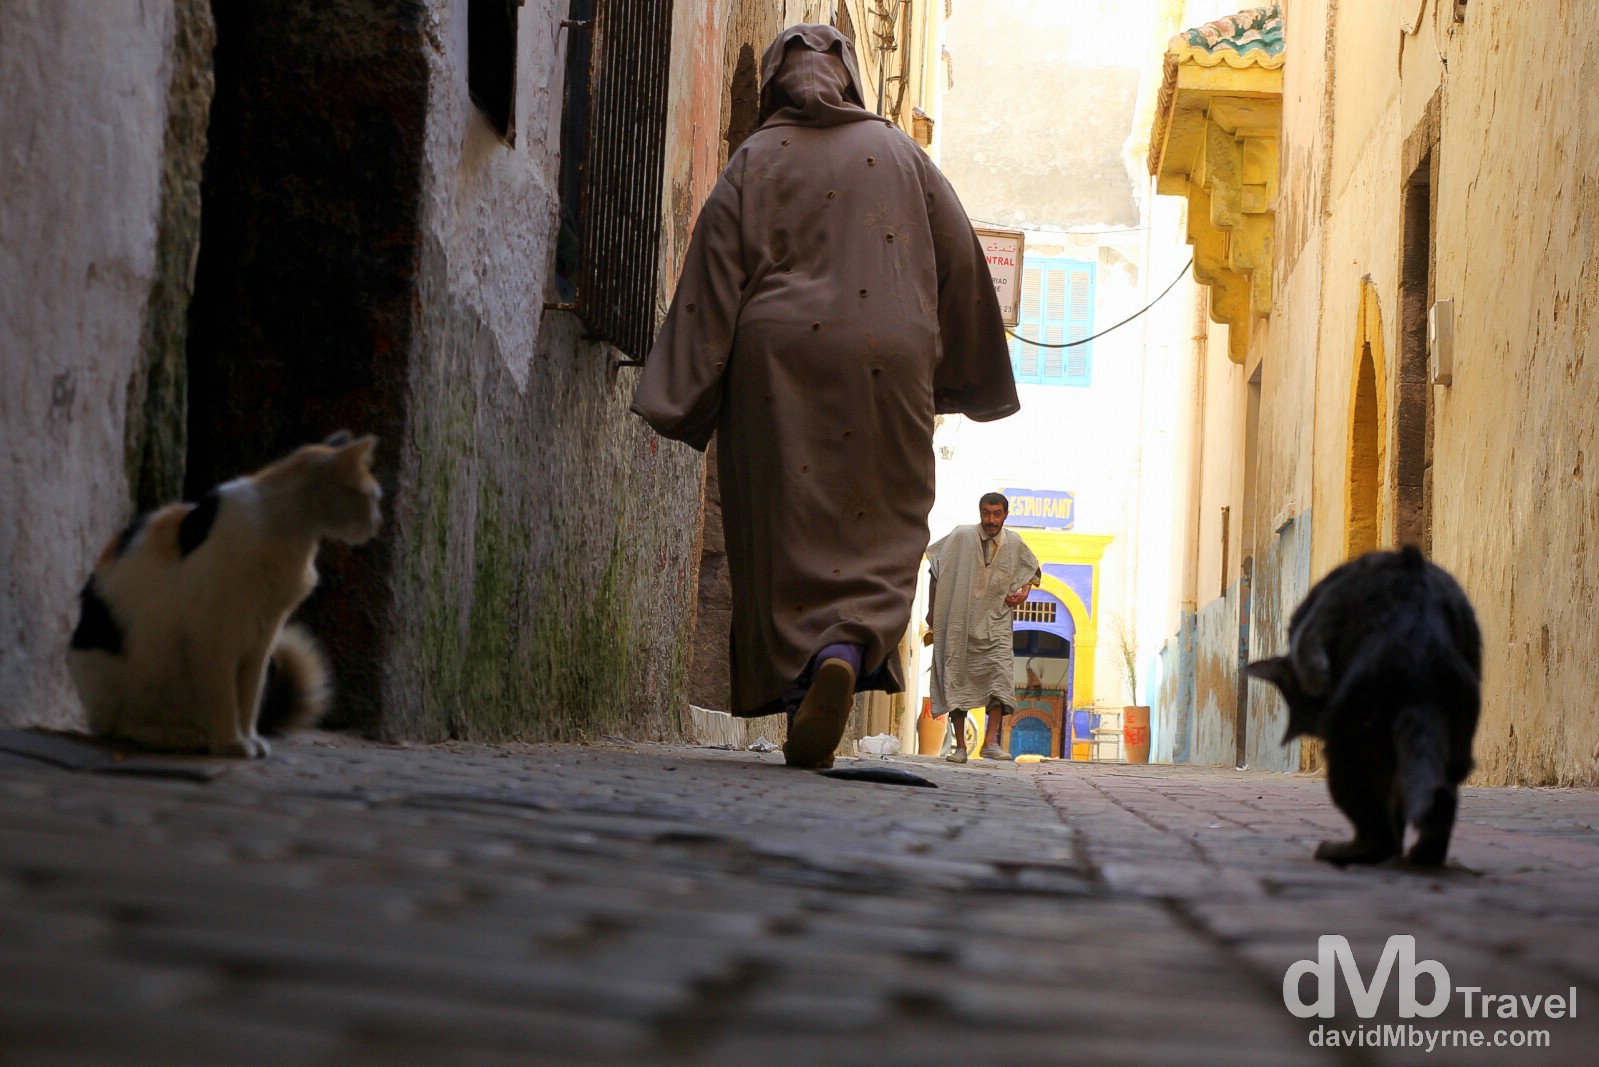 The medina in Essaouira, Morocco. May 4th, 2014.